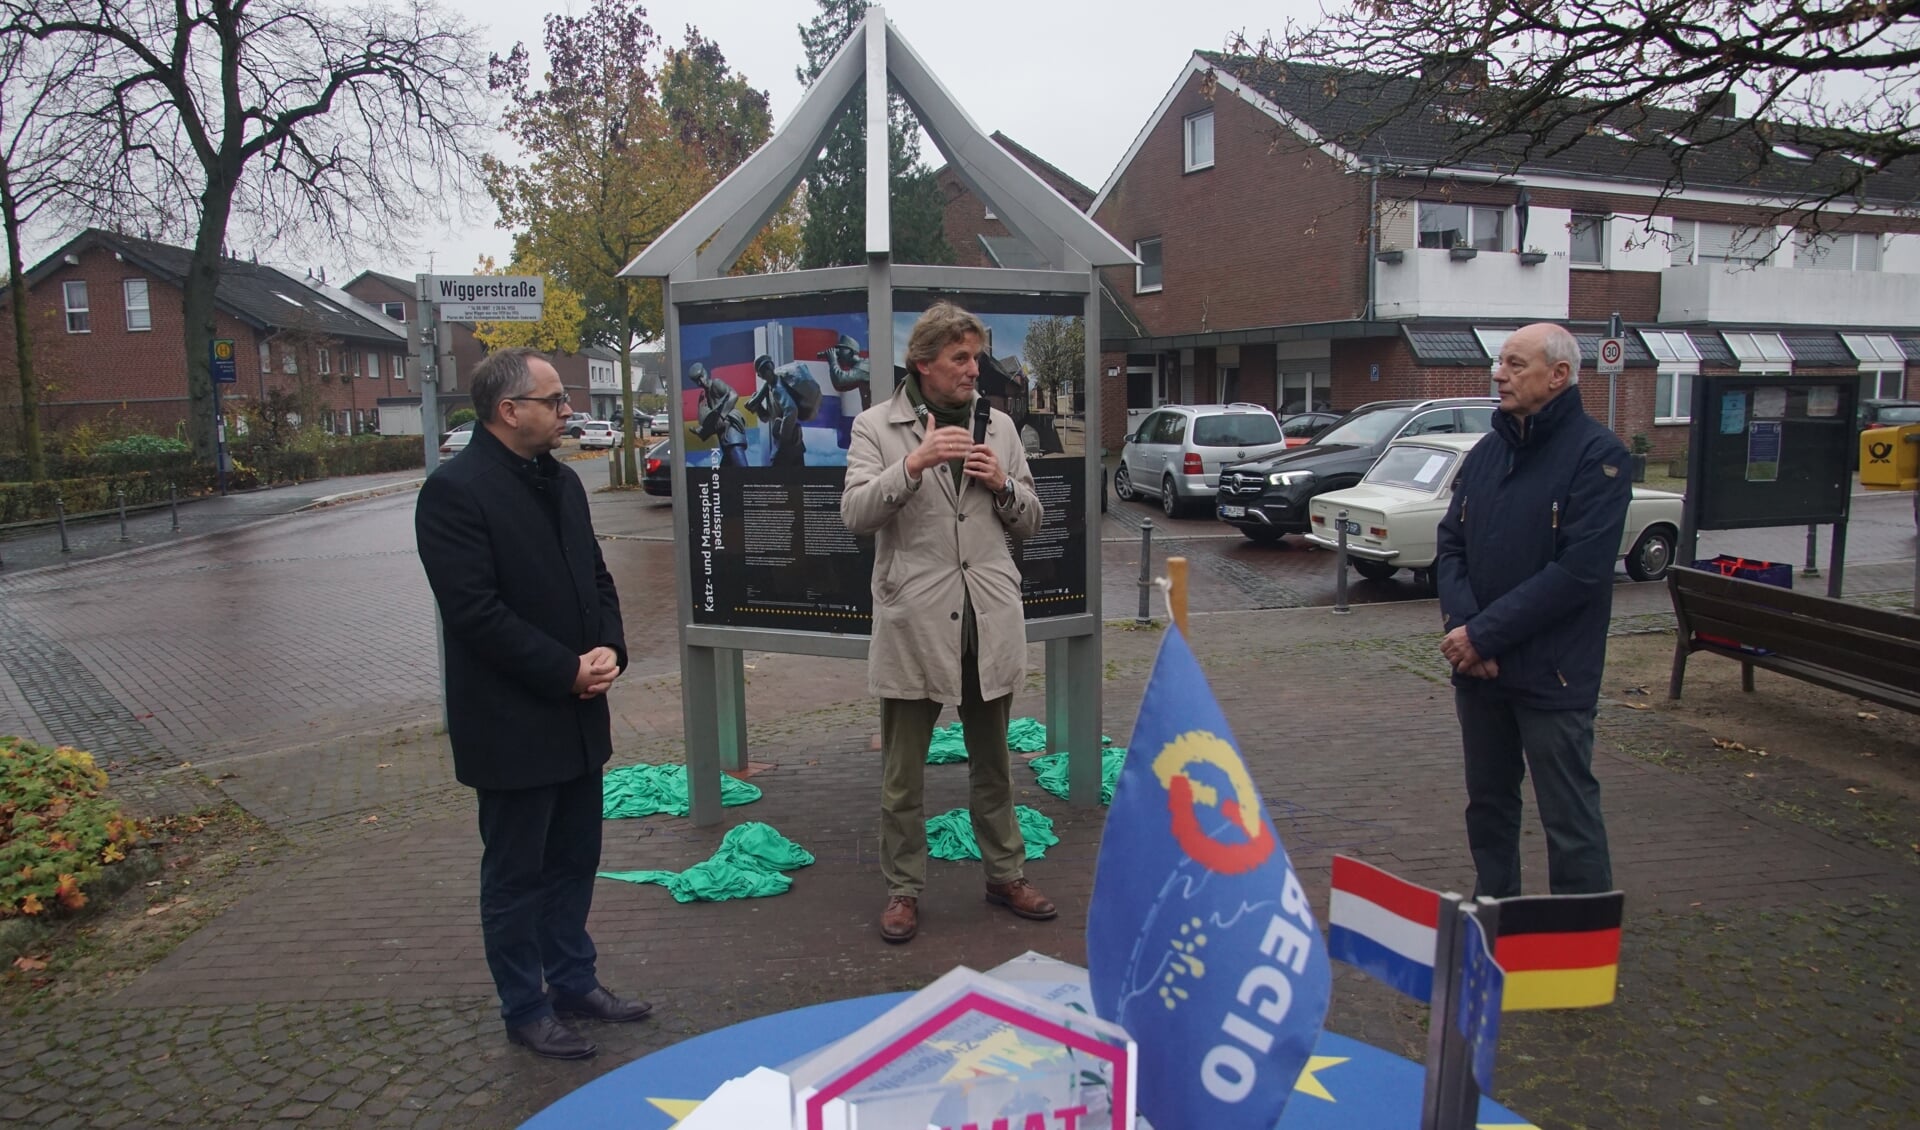 Links Thomas Kerkhoff, burgemeester van Bocholt, burgemeester gemeente Aalten Anton Stapelkamp met Johannes Hoven bij het nieuwe 'Büdeken'. Foto: Frank Vinkenvleugel